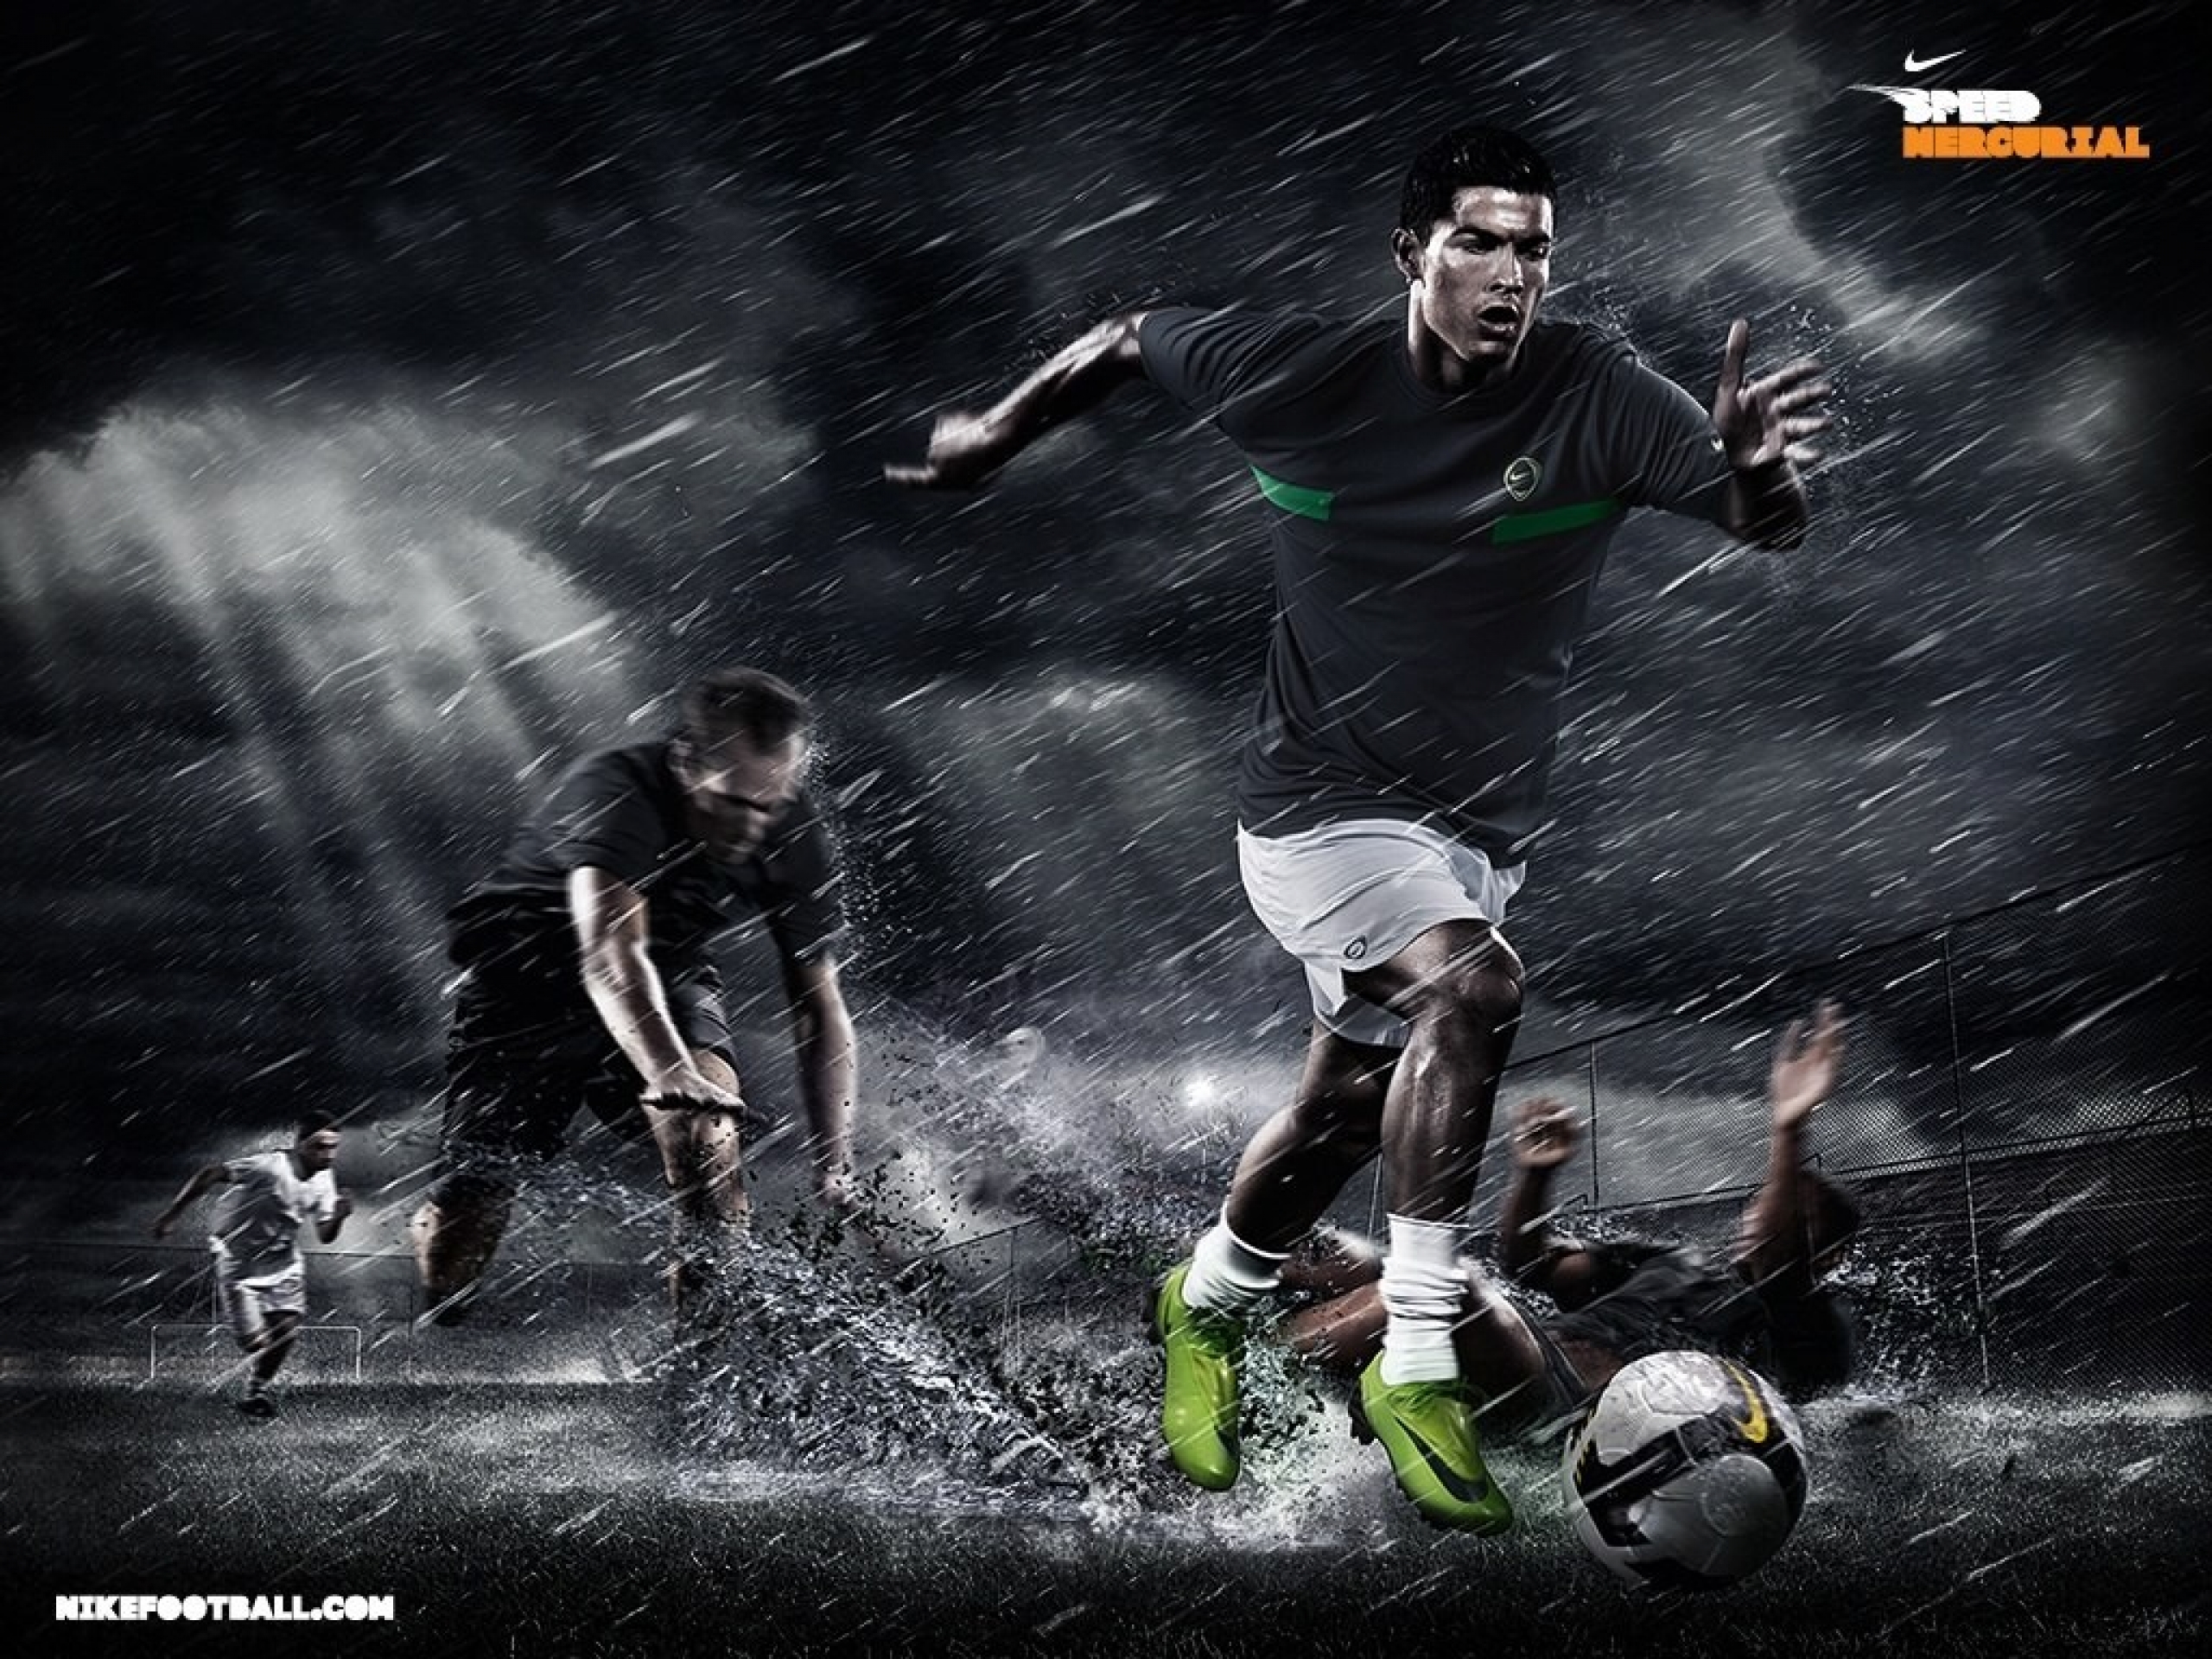 Wallpaper Al HD Nike Futbol Cristiano Ronaldo